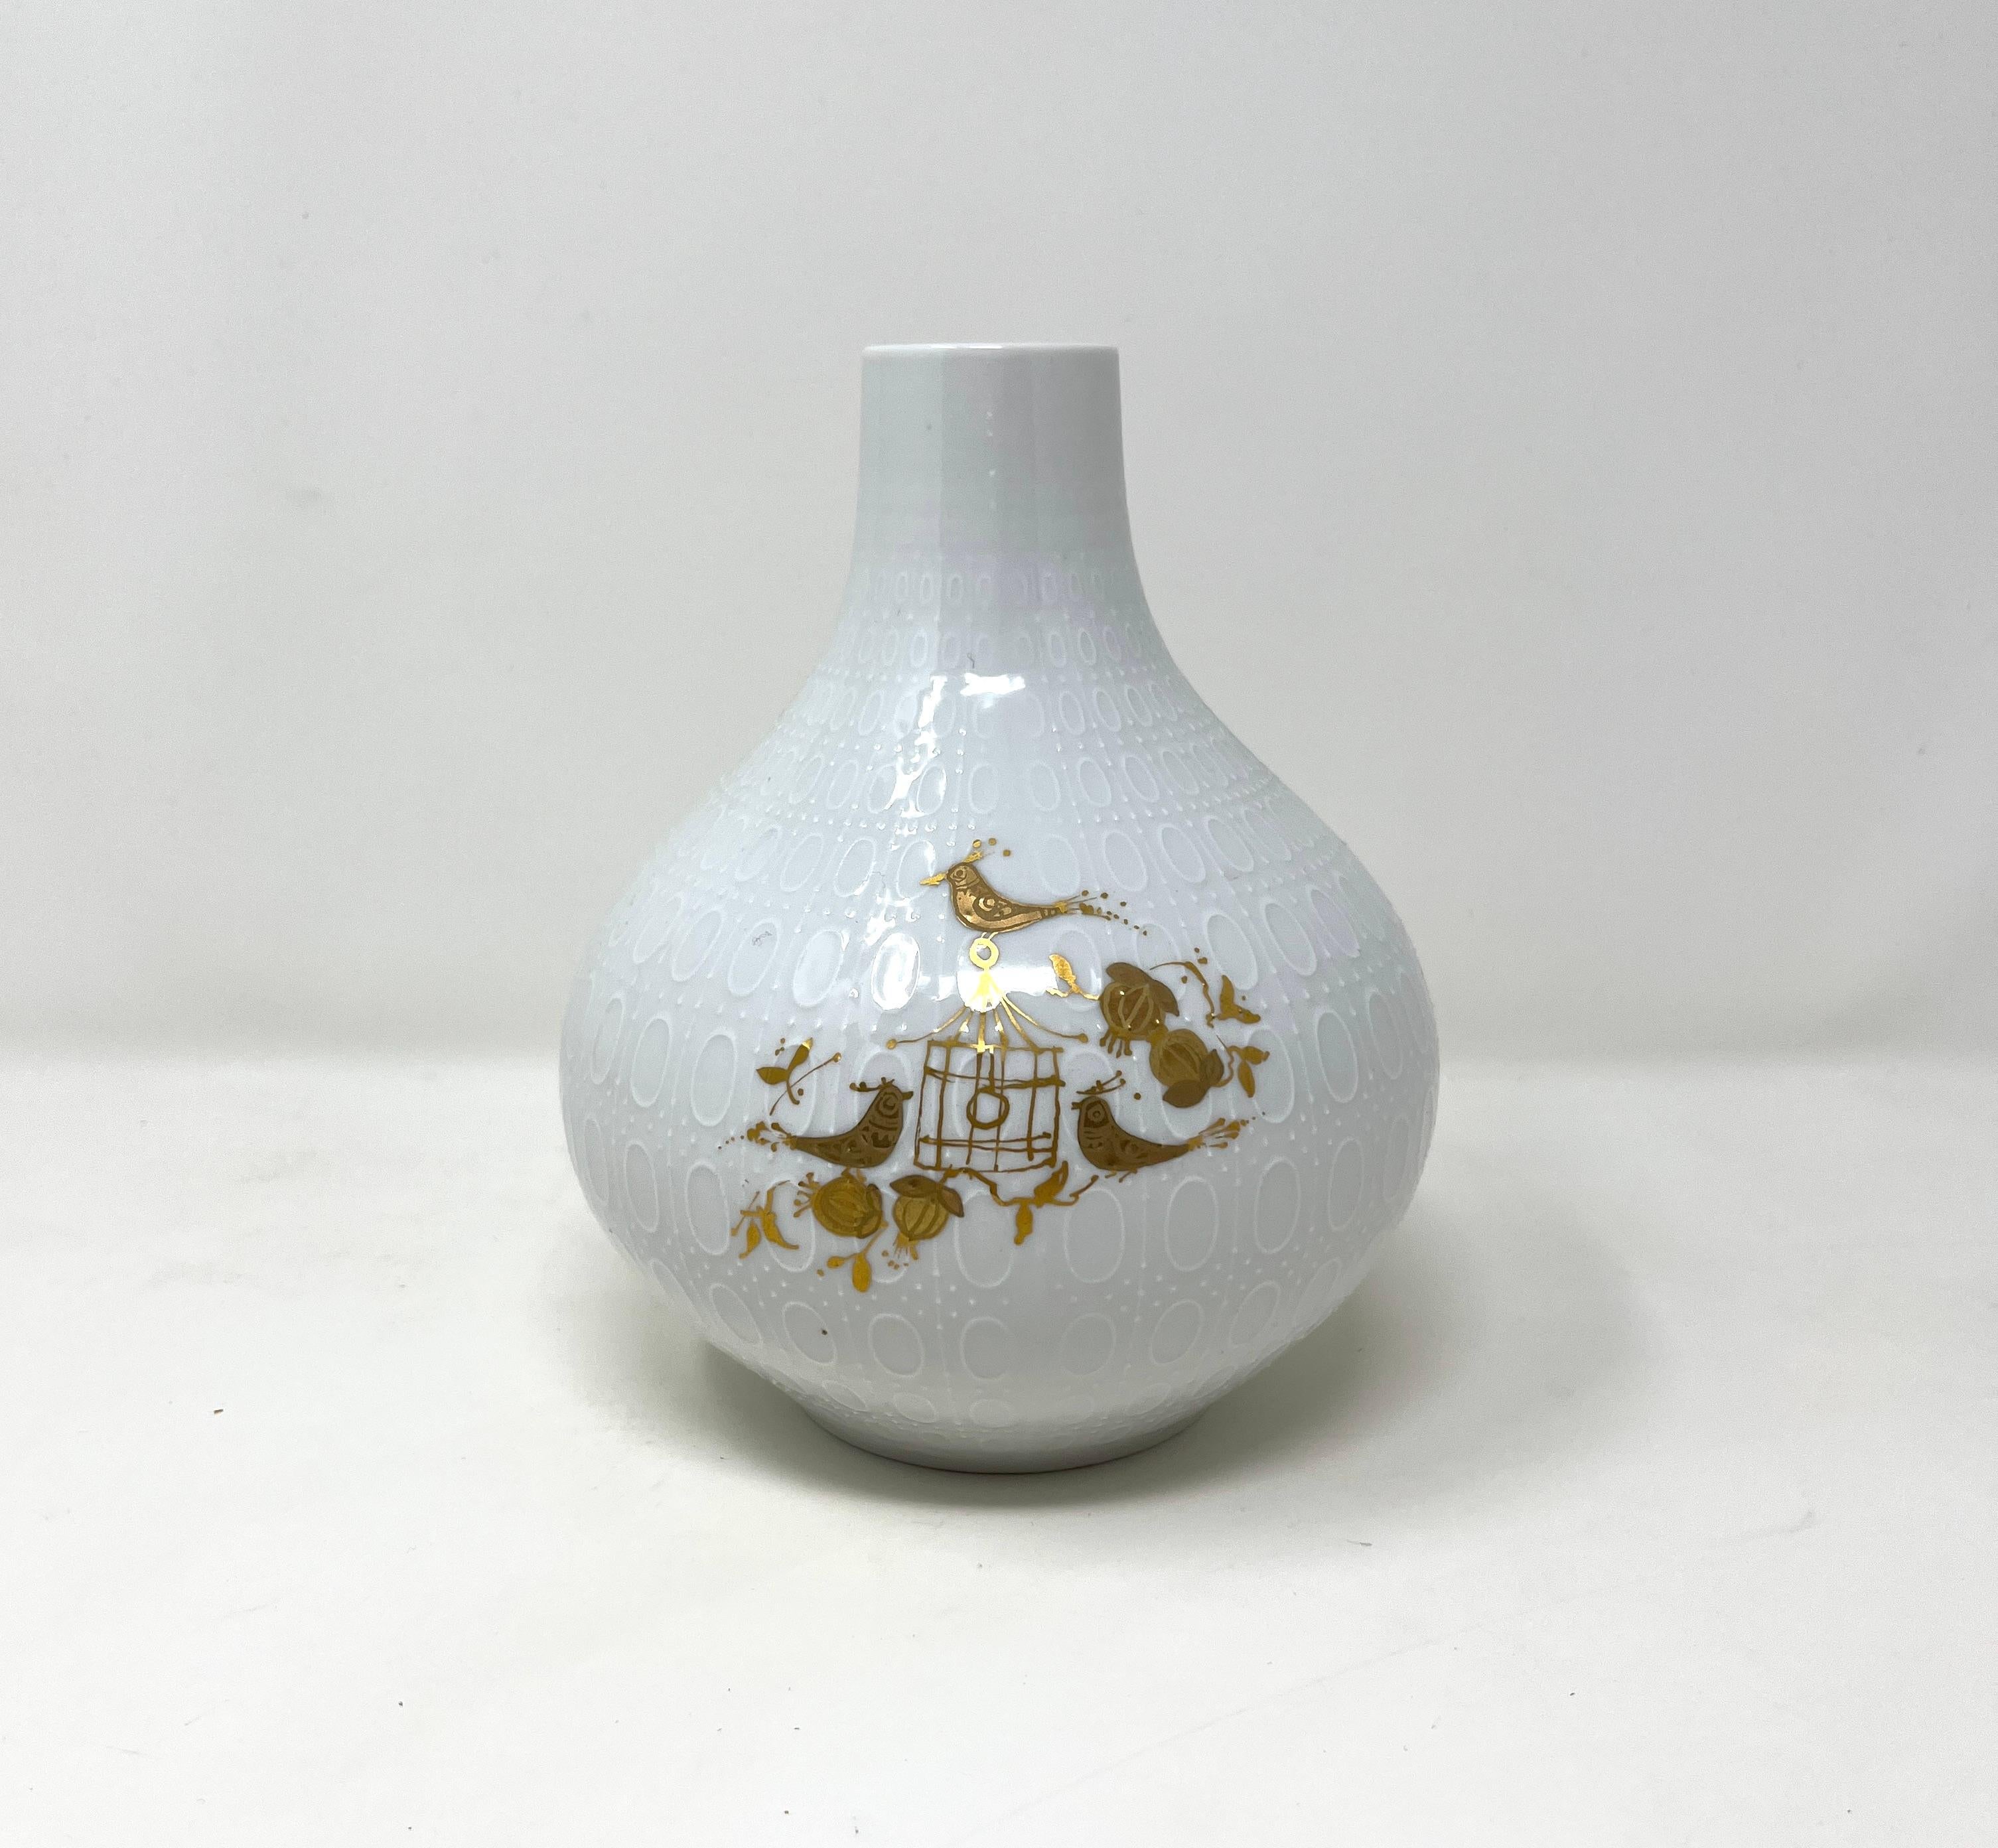 Vase Bjorn Wiinblad pour Rosenthal en forme de gourde en porcelaine avec relief clouté et ovale. Peint à la main à la feuille d'or, un personnage enjoué se pavane parmi les citrouilles, un motif enfantin typique de l'art de Wiinblad.

(L'or est